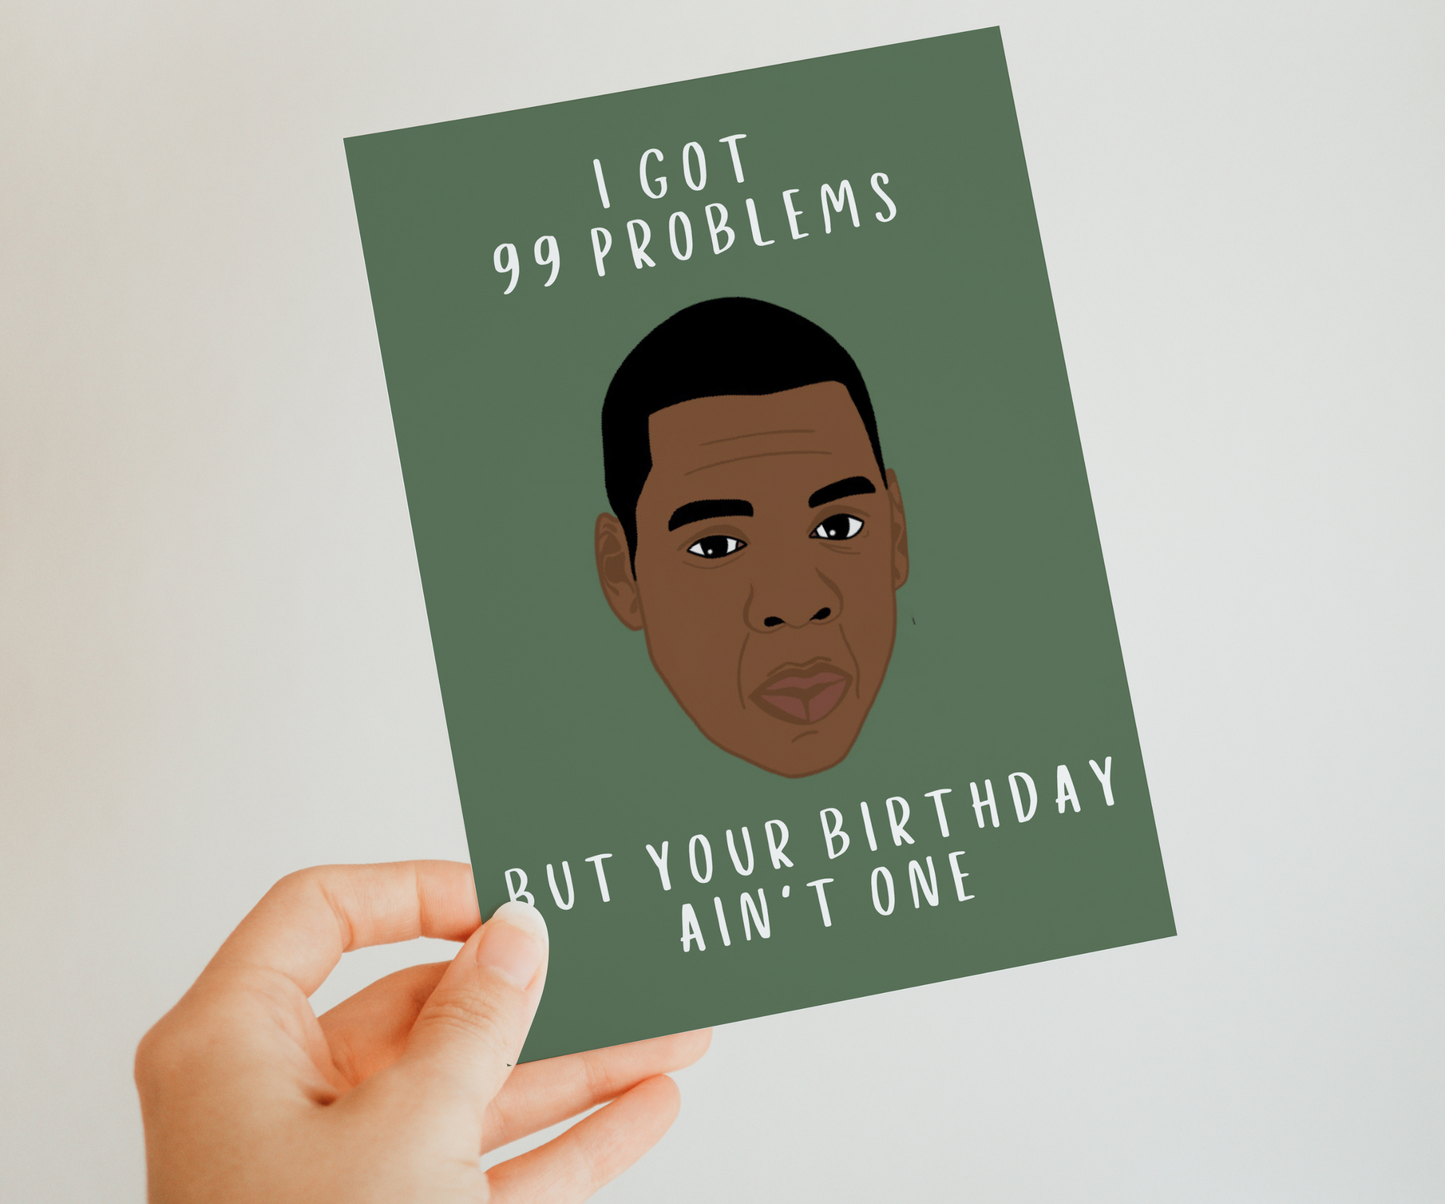 Jay-Z Geburtstagskarte - I got 99 problems but your birthday ain't one